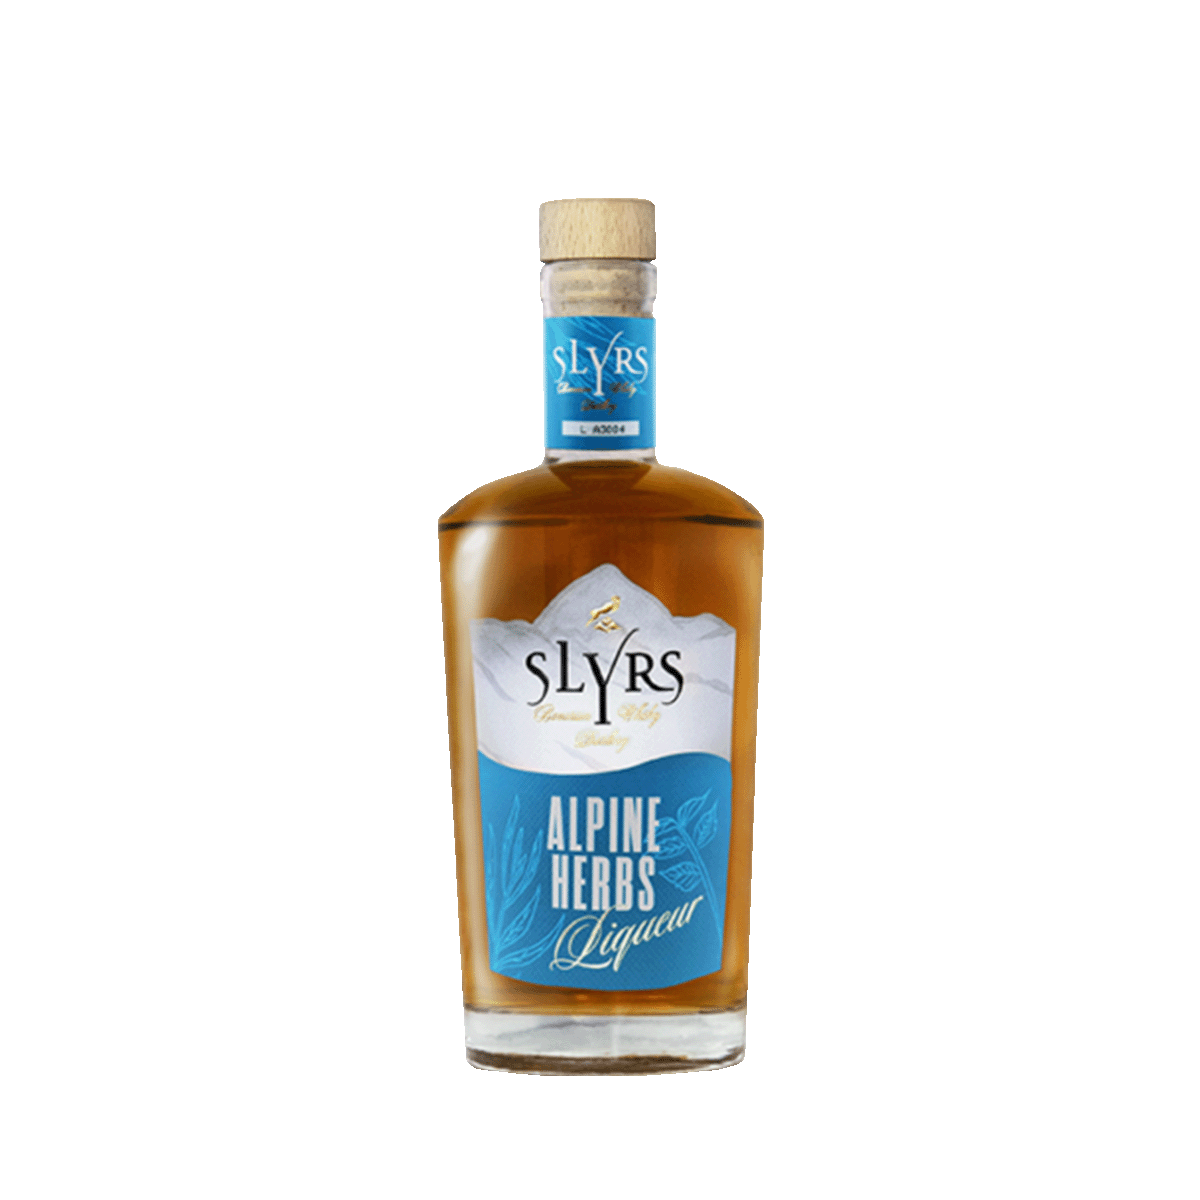 Slyrs Alpine Herbs Cream 30% vol von Slyrs Destillerie